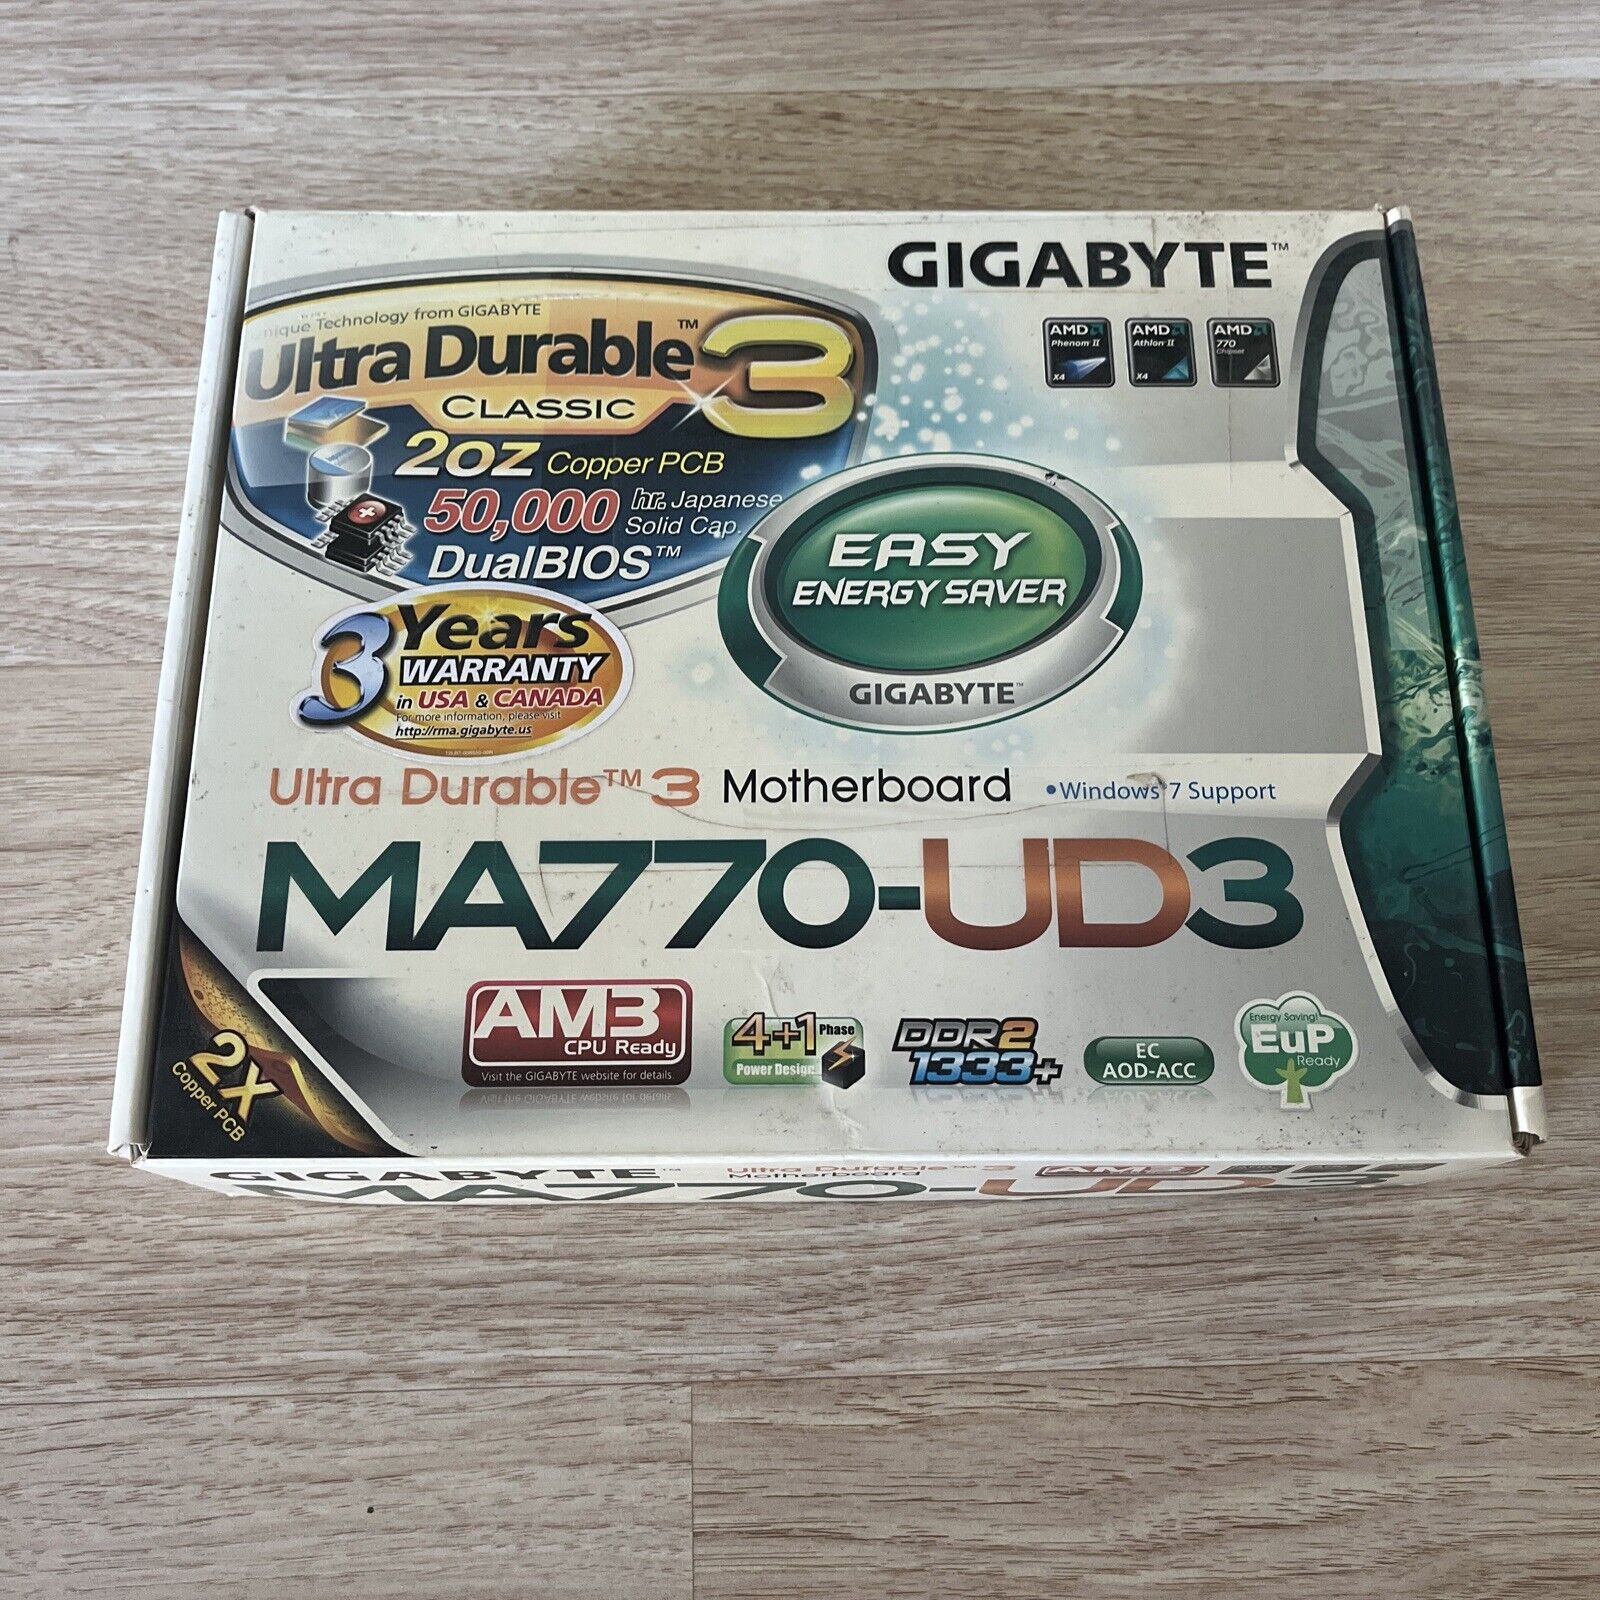 Motherboard Gigabyte GA-MA770-UD3 Ultra Durable3 MA770-UD3 AM3 Dual Bios DDR2+